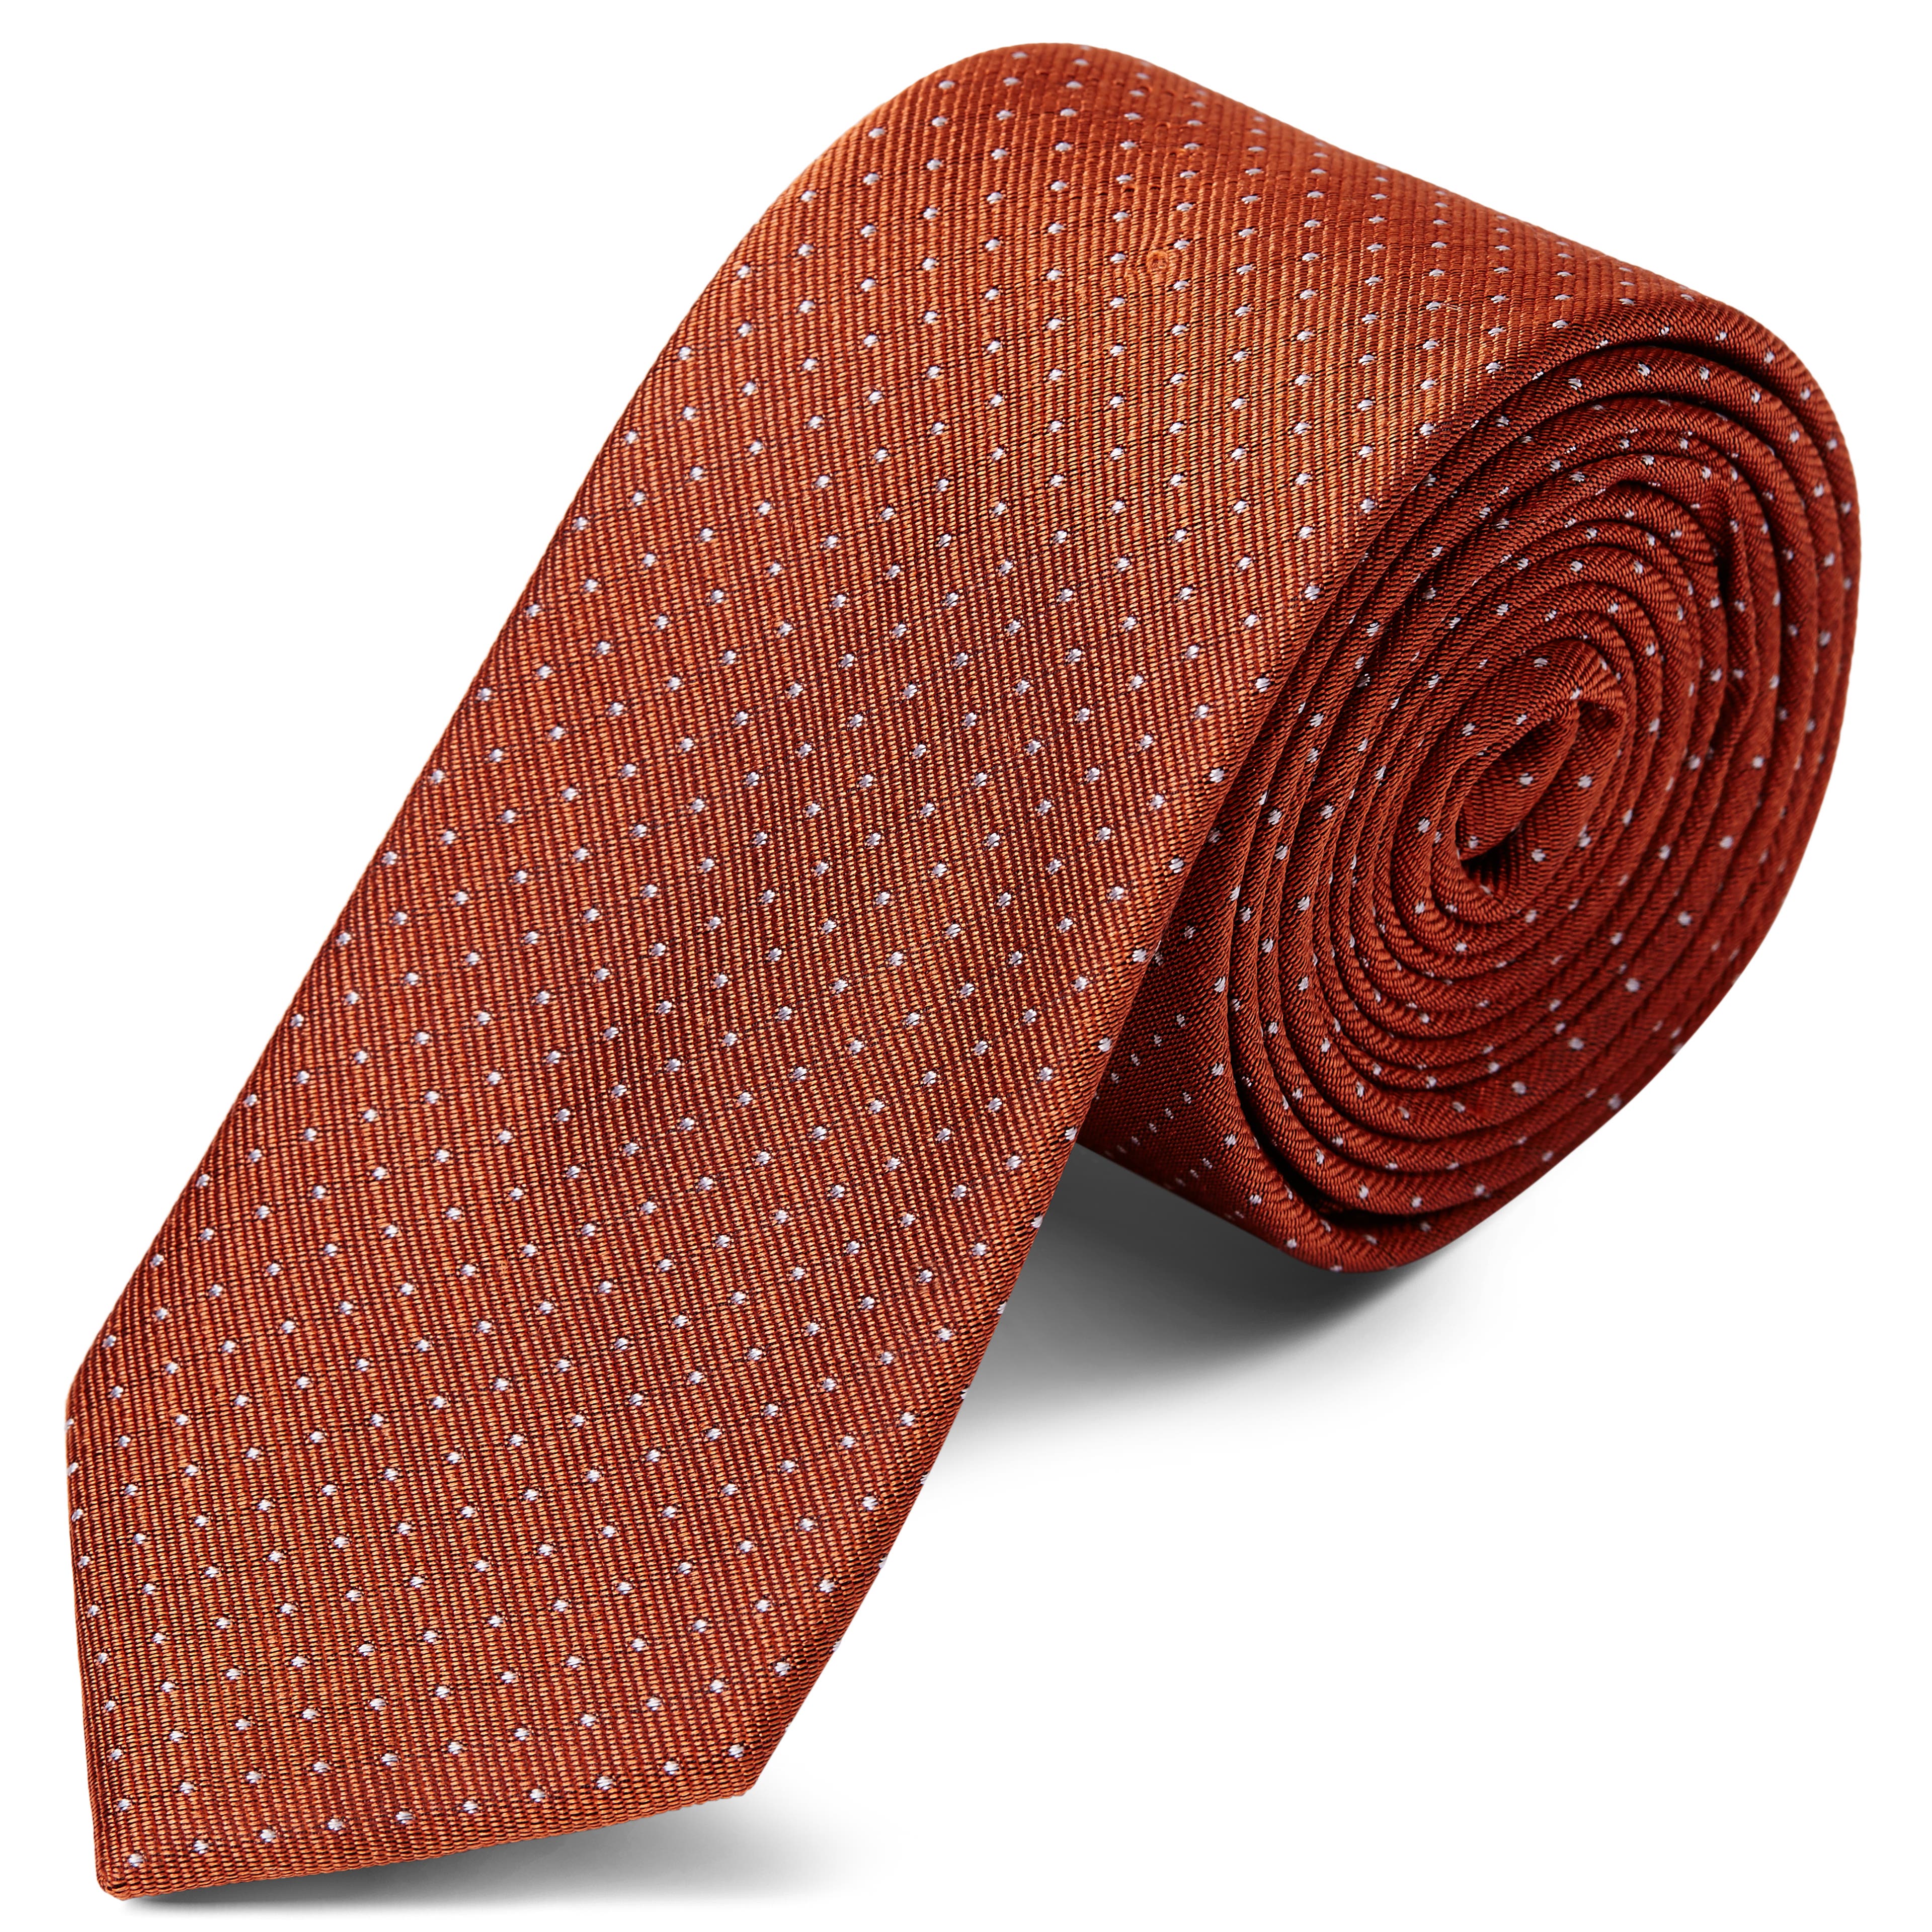 Cravate en soie brune à pois blancs - 6 cm